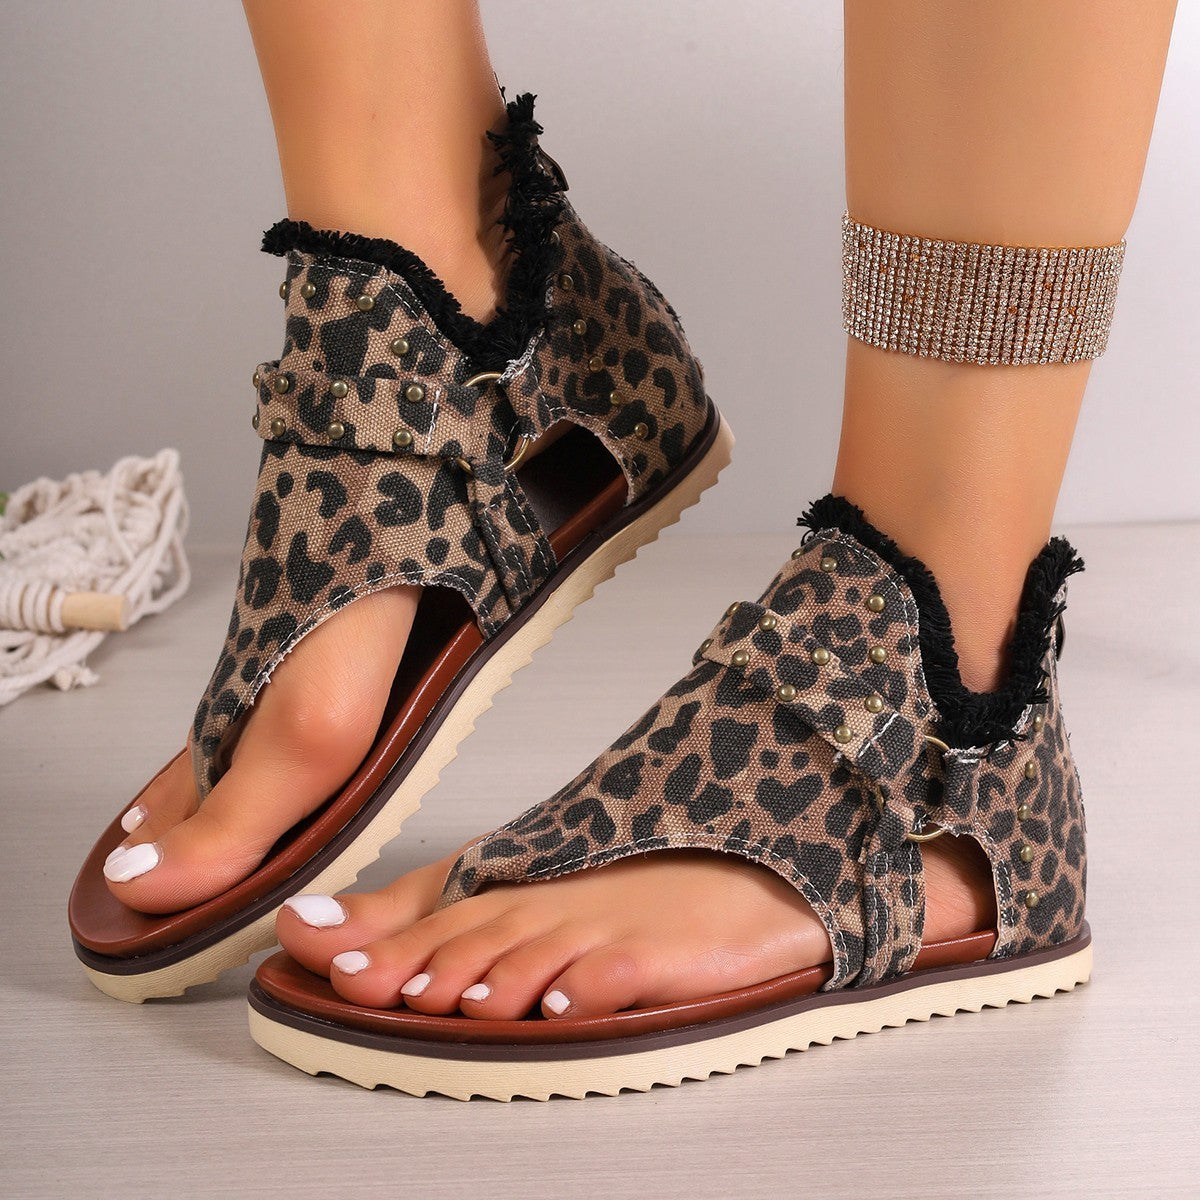 Denim Thong Sandals With Rear Zipper Summer Retro Beach Flat Shoes For Women